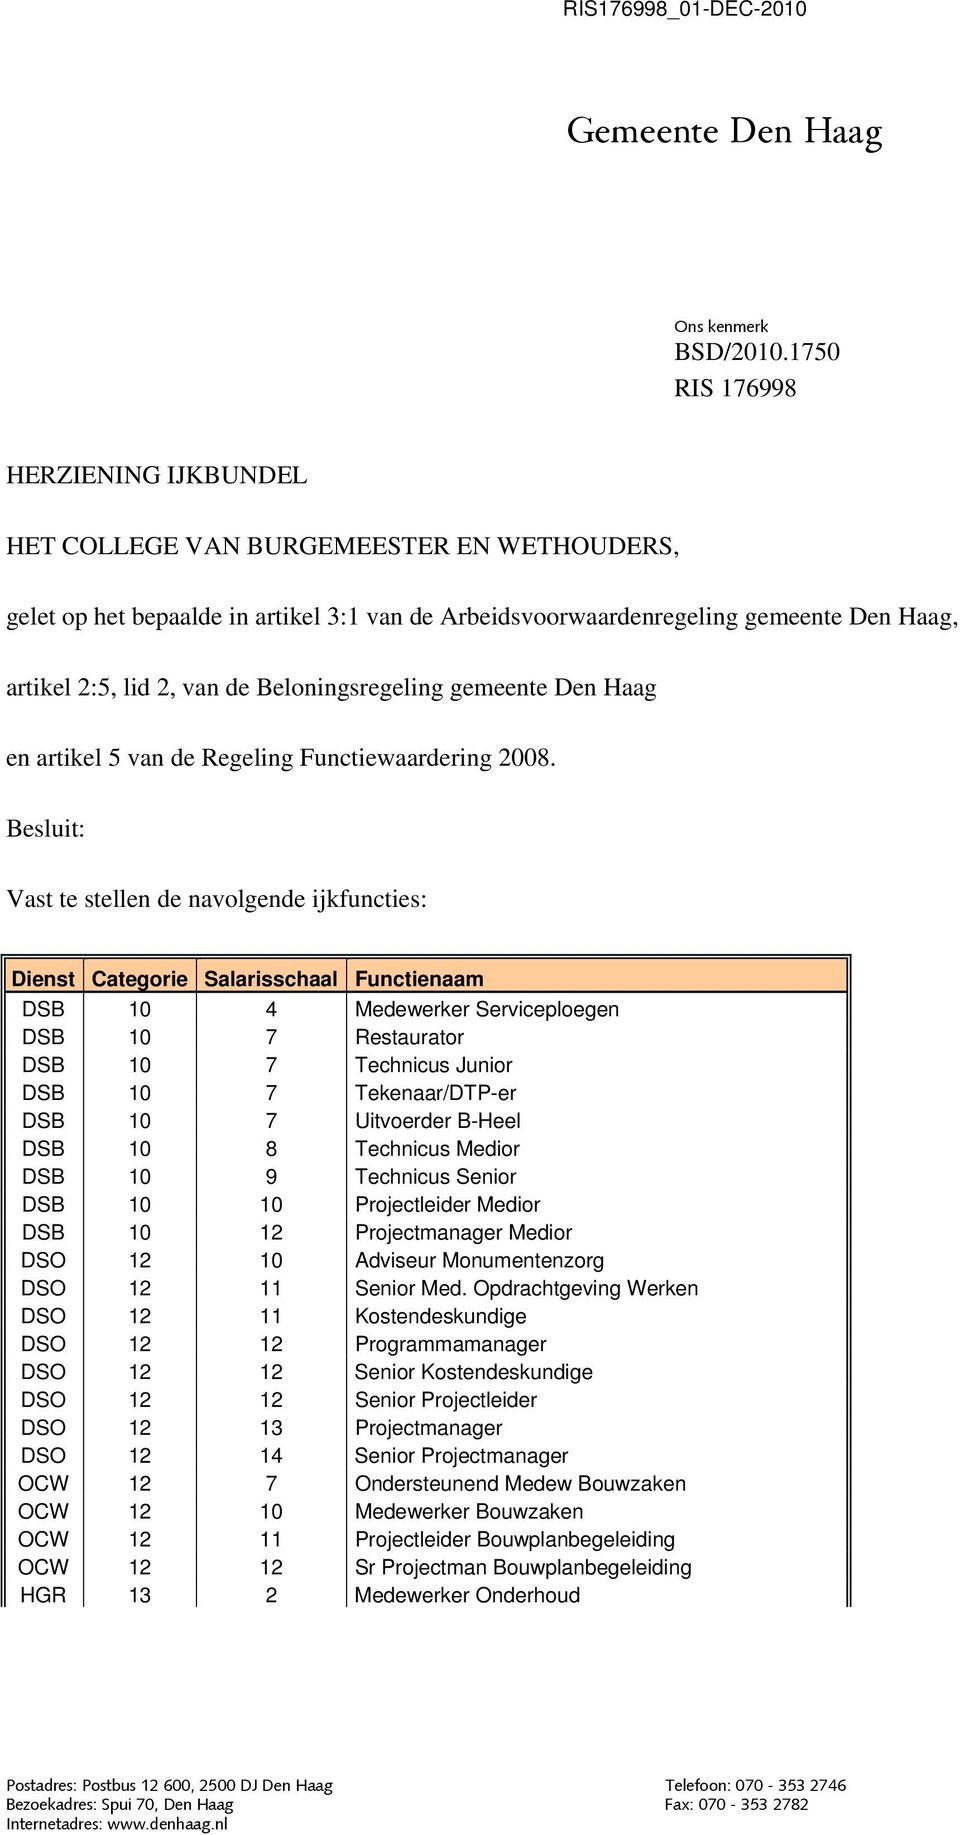 Beloningsregeling gemeente Den Haag en artikel 5 van de Regeling Functiewaardering 2008.